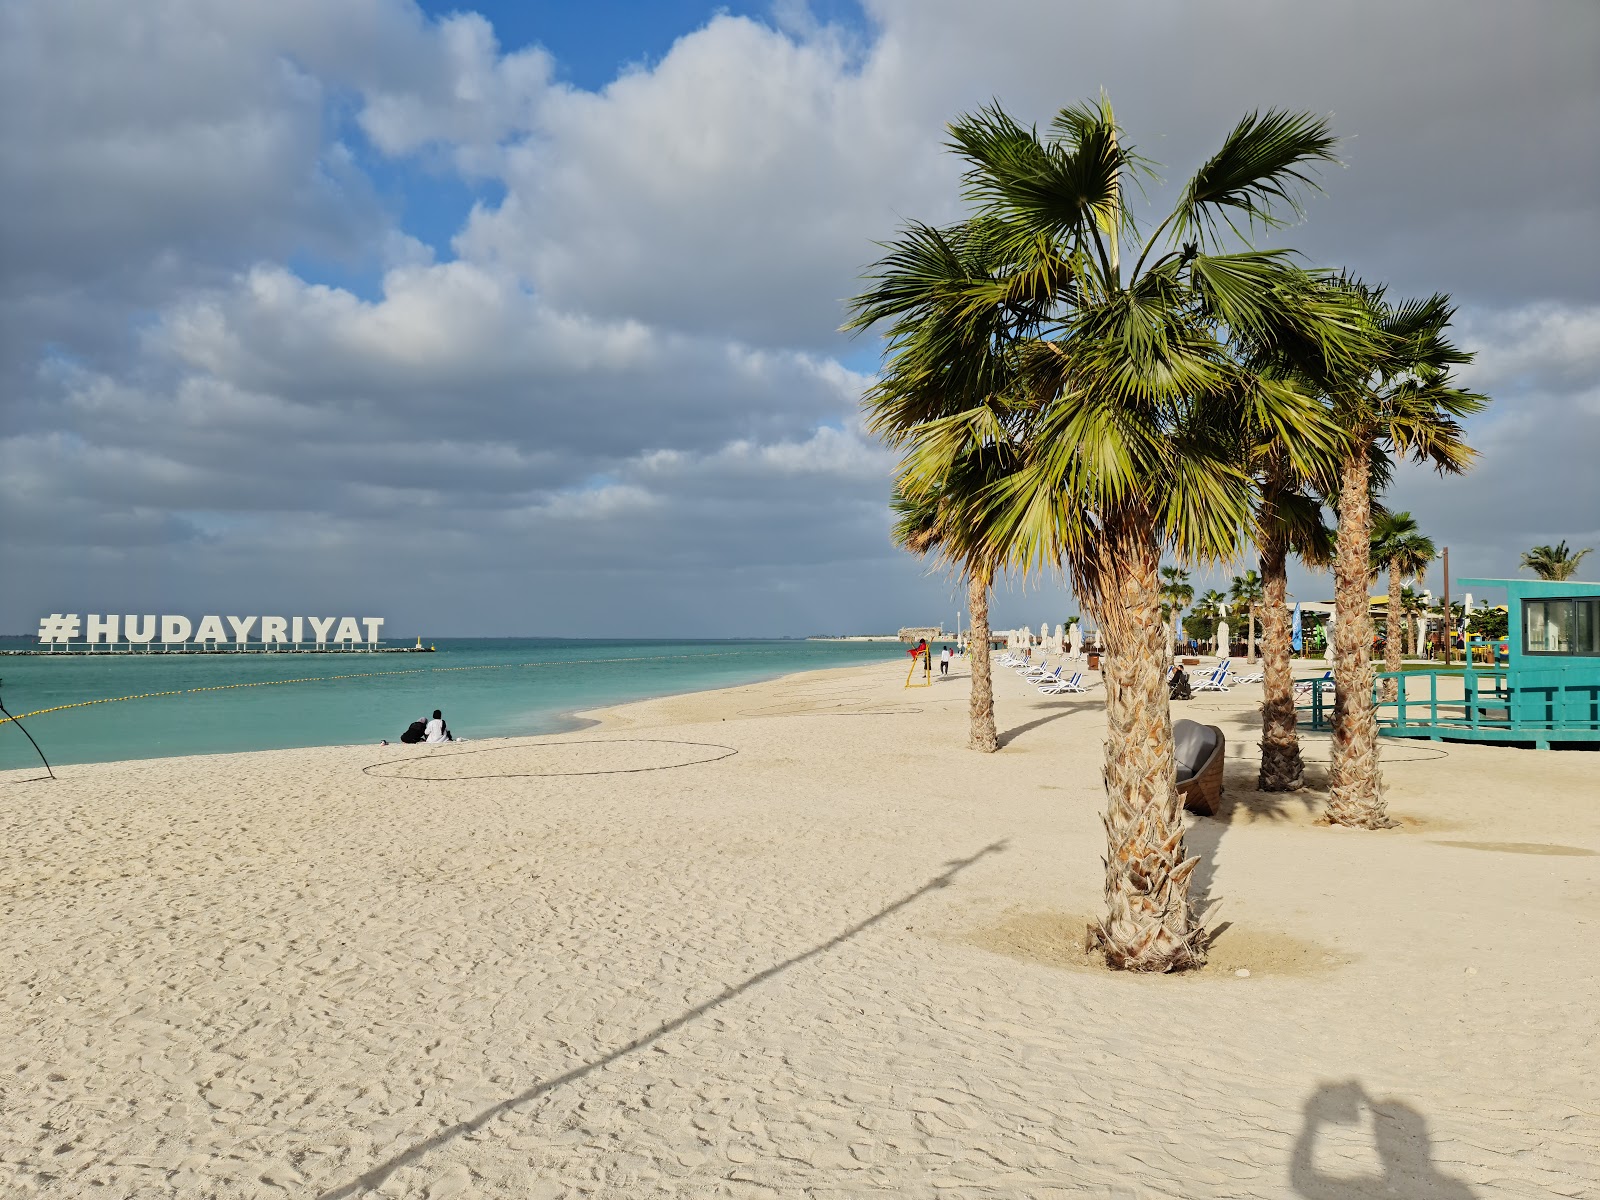 Fotografie cu Al Hudayriat Beach cu o suprafață de nisip alb